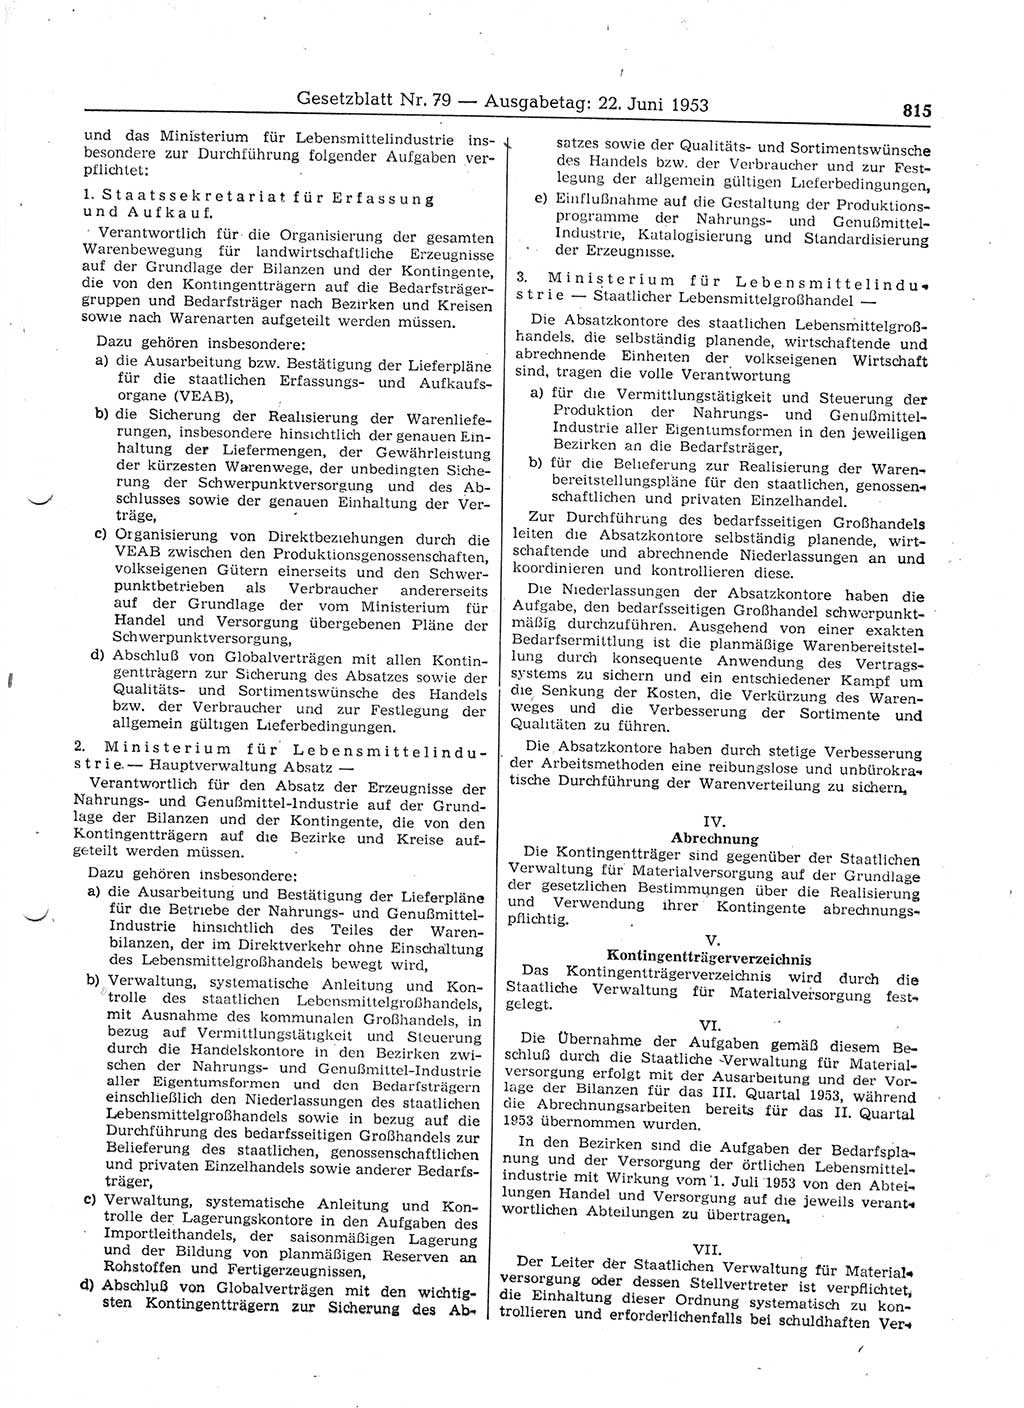 Gesetzblatt (GBl.) der Deutschen Demokratischen Republik (DDR) 1953, Seite 815 (GBl. DDR 1953, S. 815)